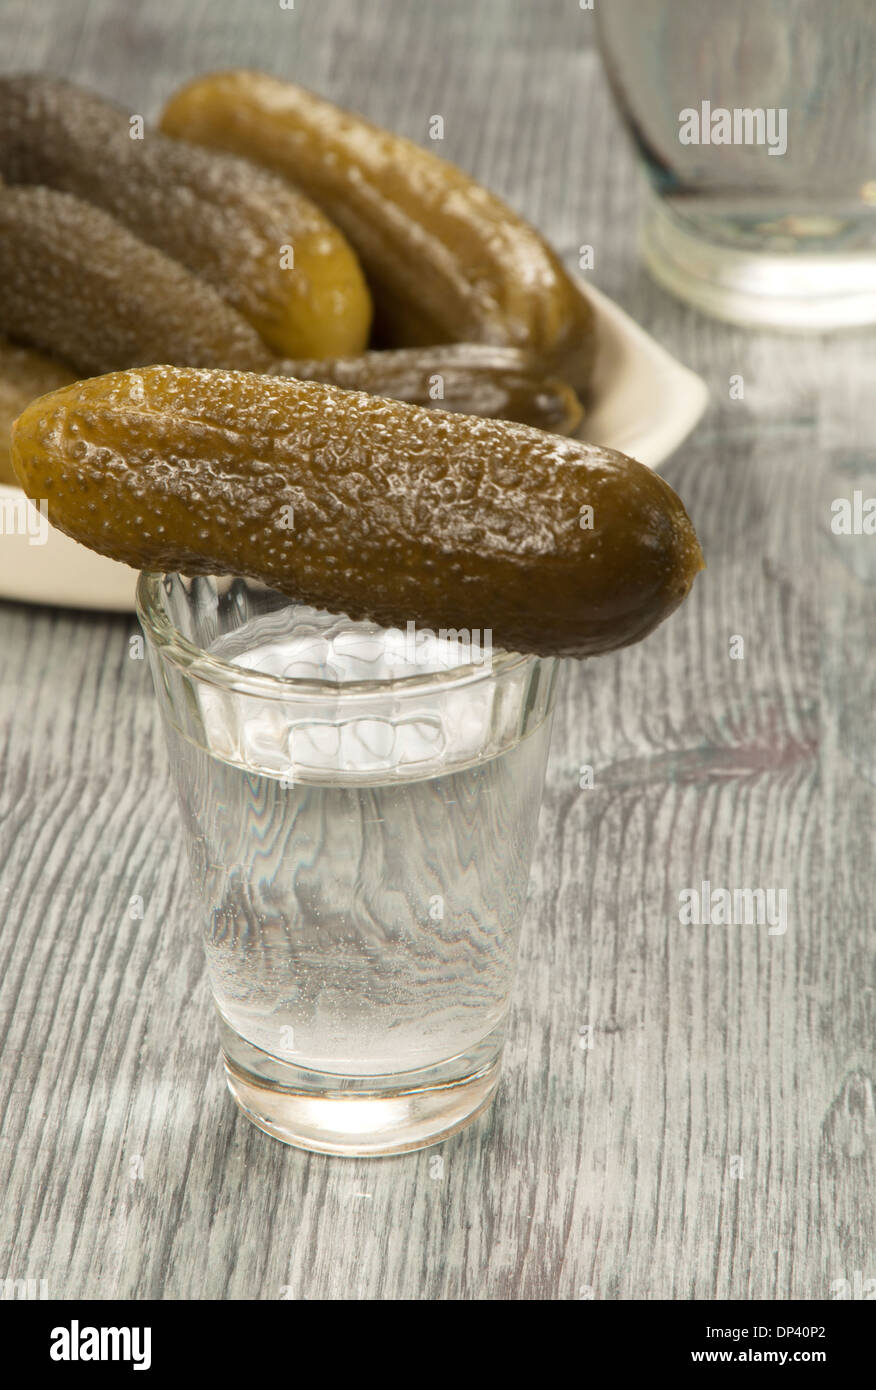 Gesalzene Gurken - eine traditionelle russische Vorspeise Wodka  Stockfotografie - Alamy